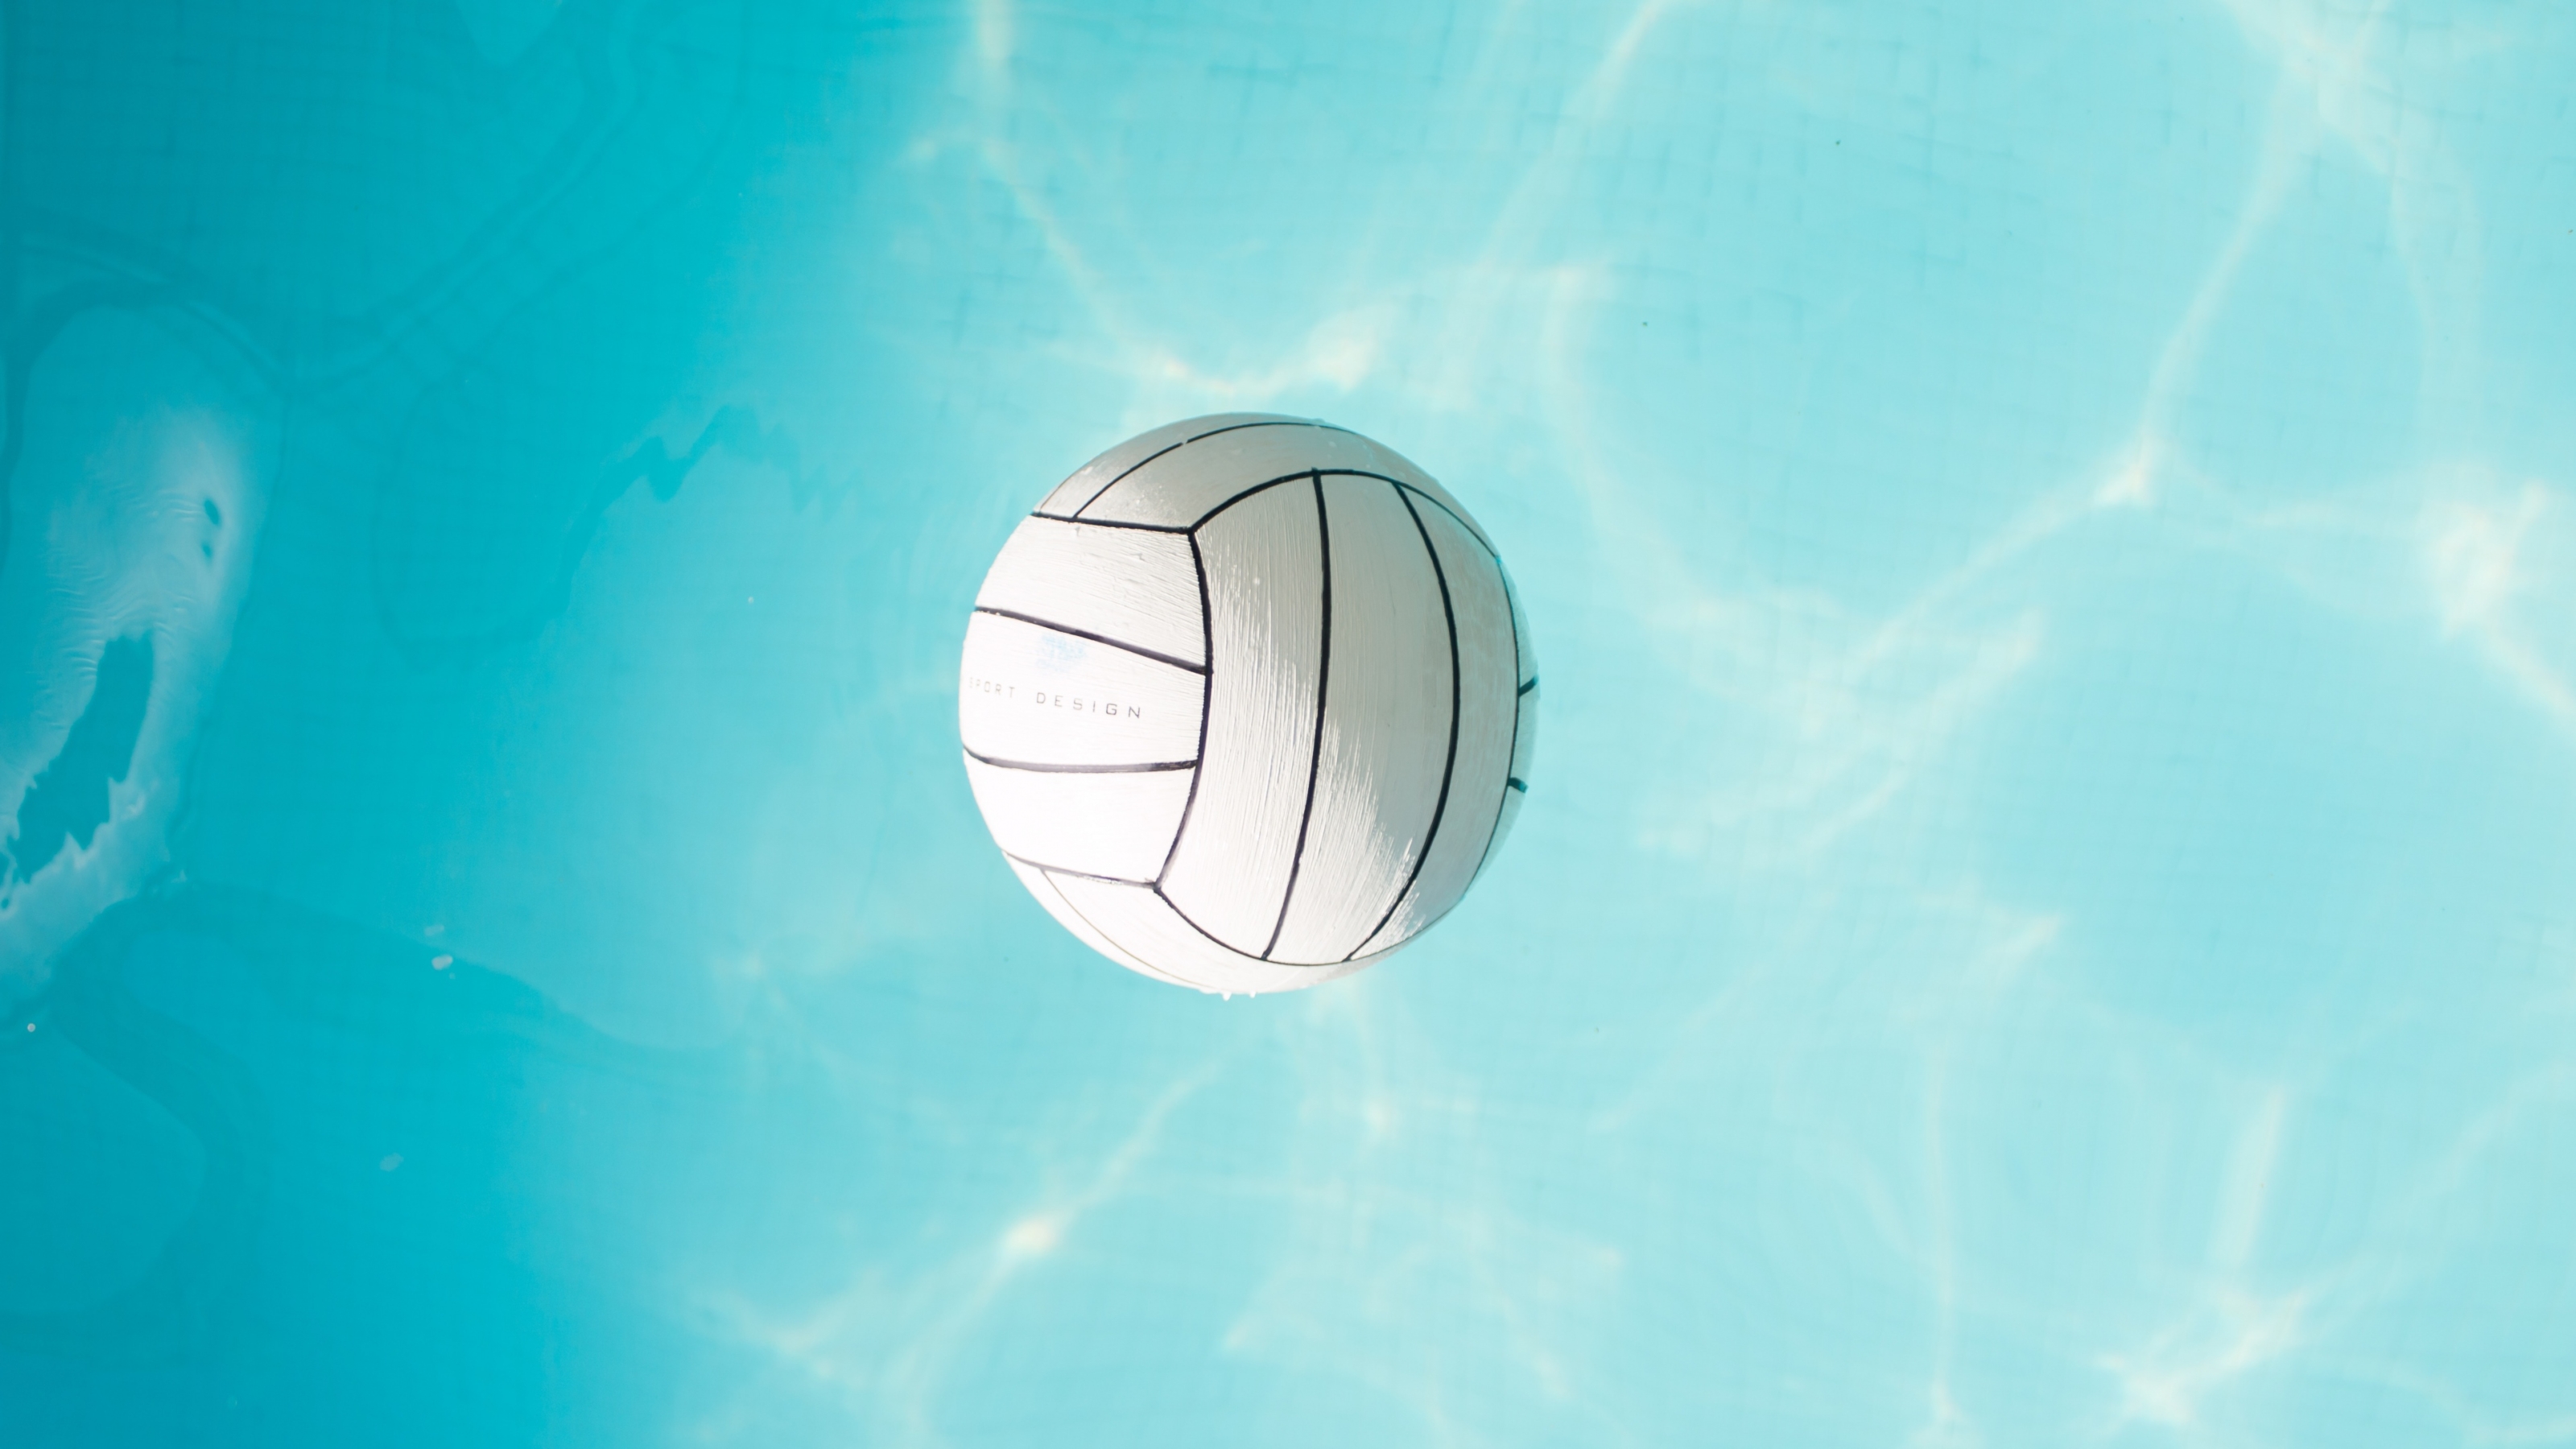 минимализм, мяч, волейбол, голубое небо, белый мяч, шар